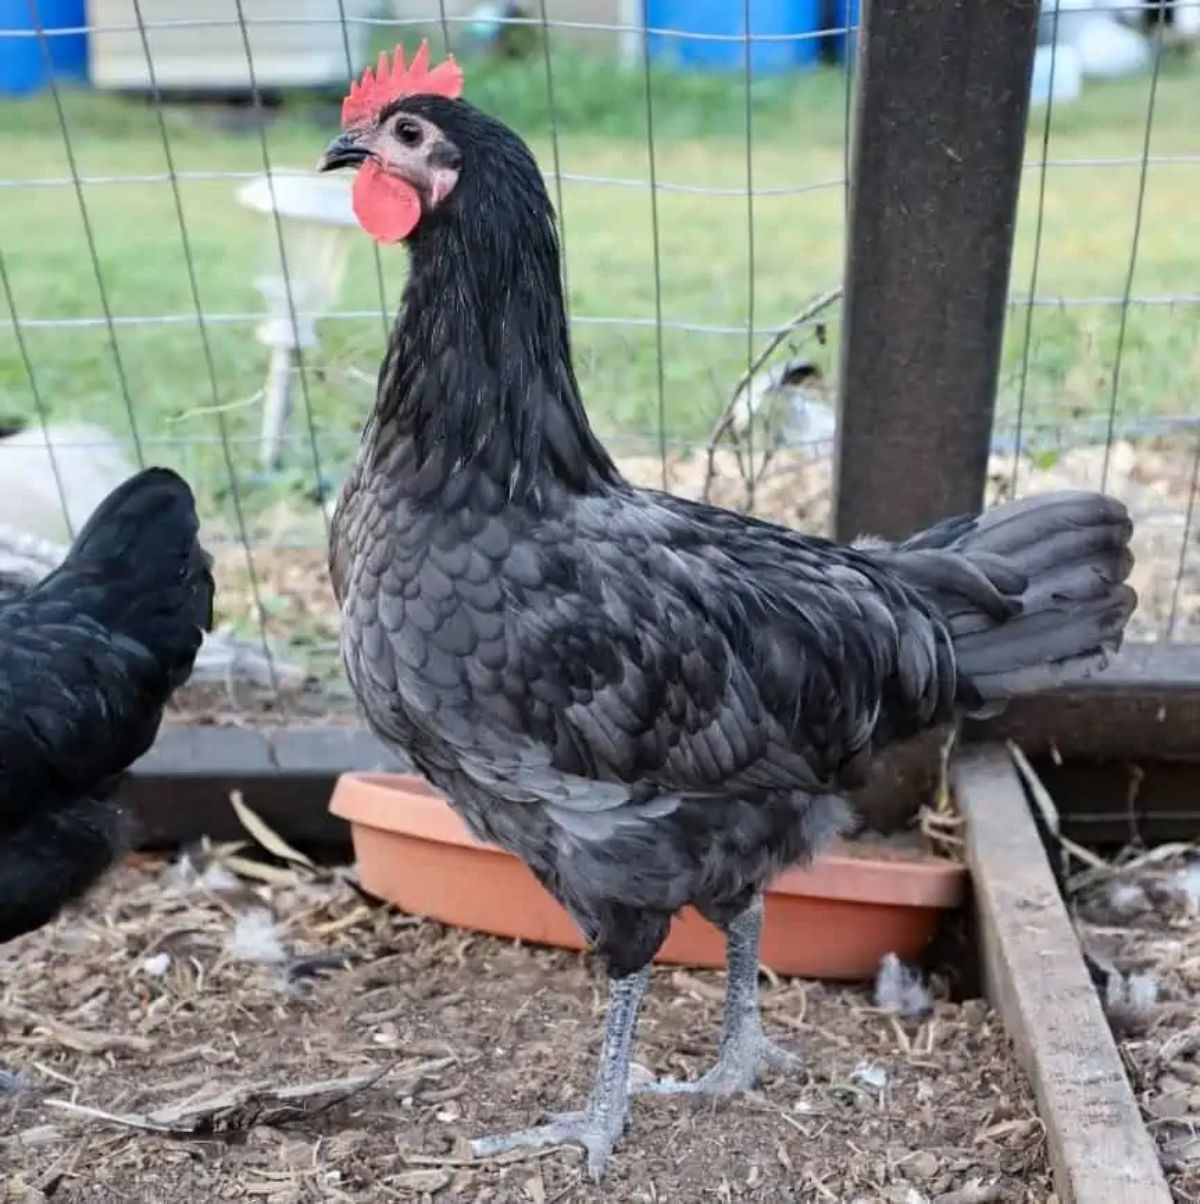 A blue Isbar hen in a chicken coop.